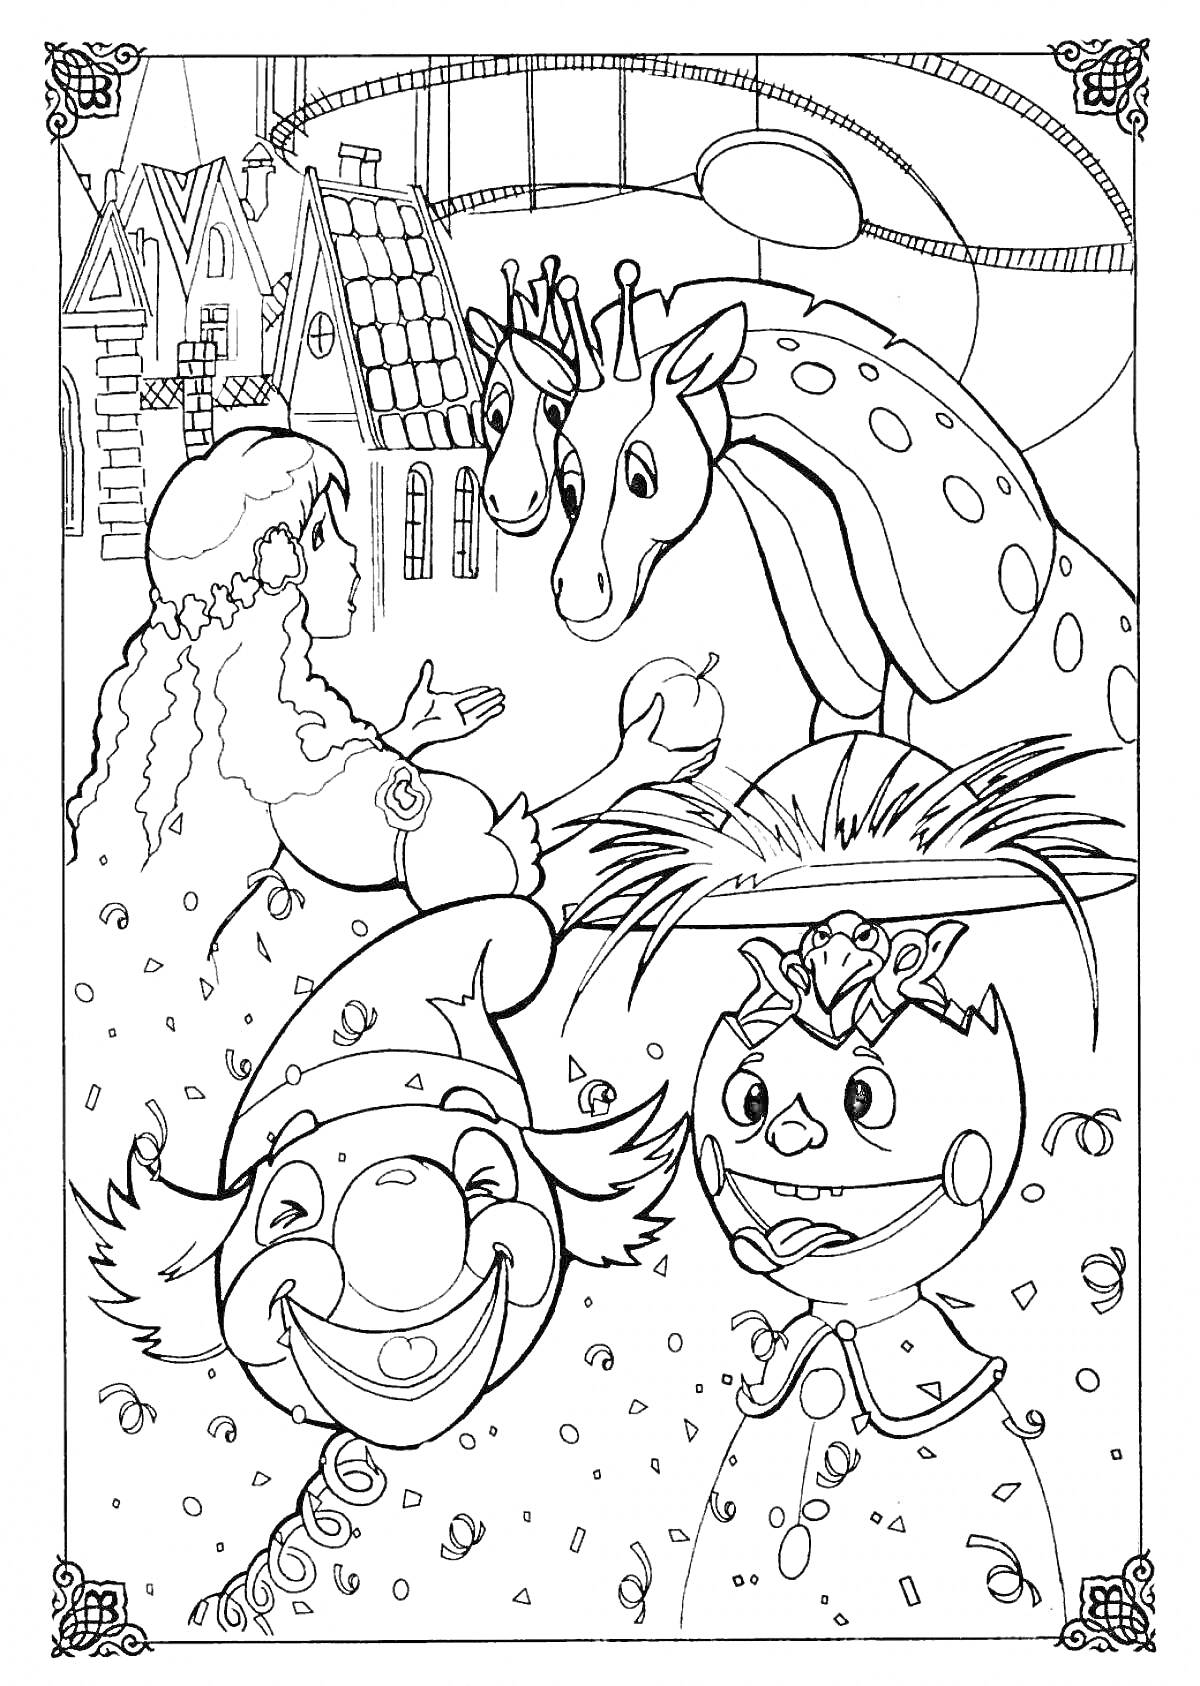 Девочка, лошадь с короной, клоун и Щелкунчик на фоне домиков